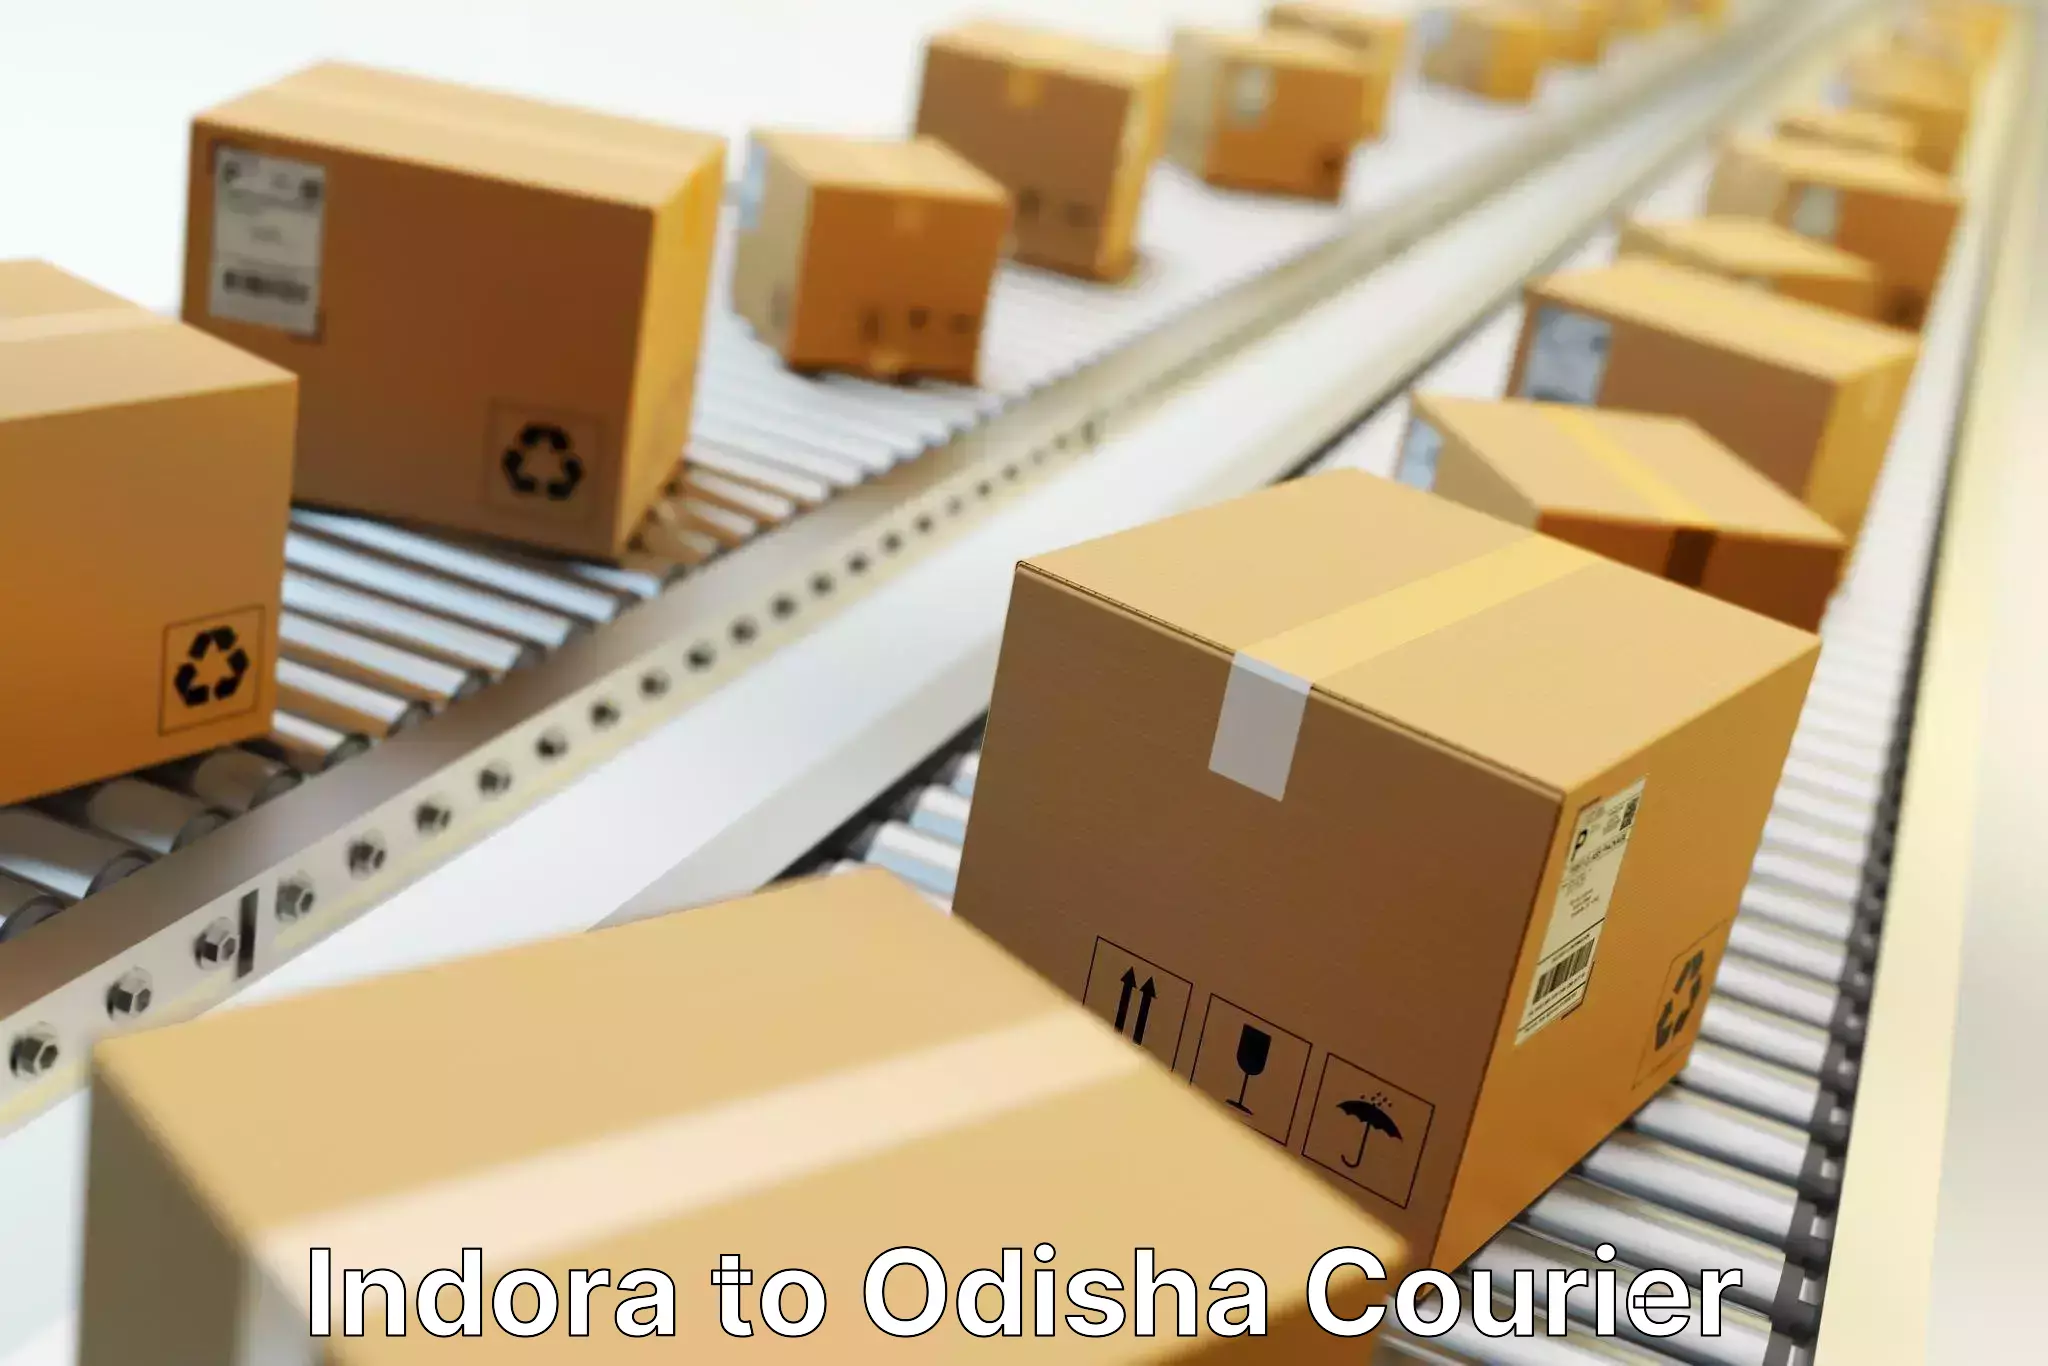 Logistics service provider Indora to Sambalpur